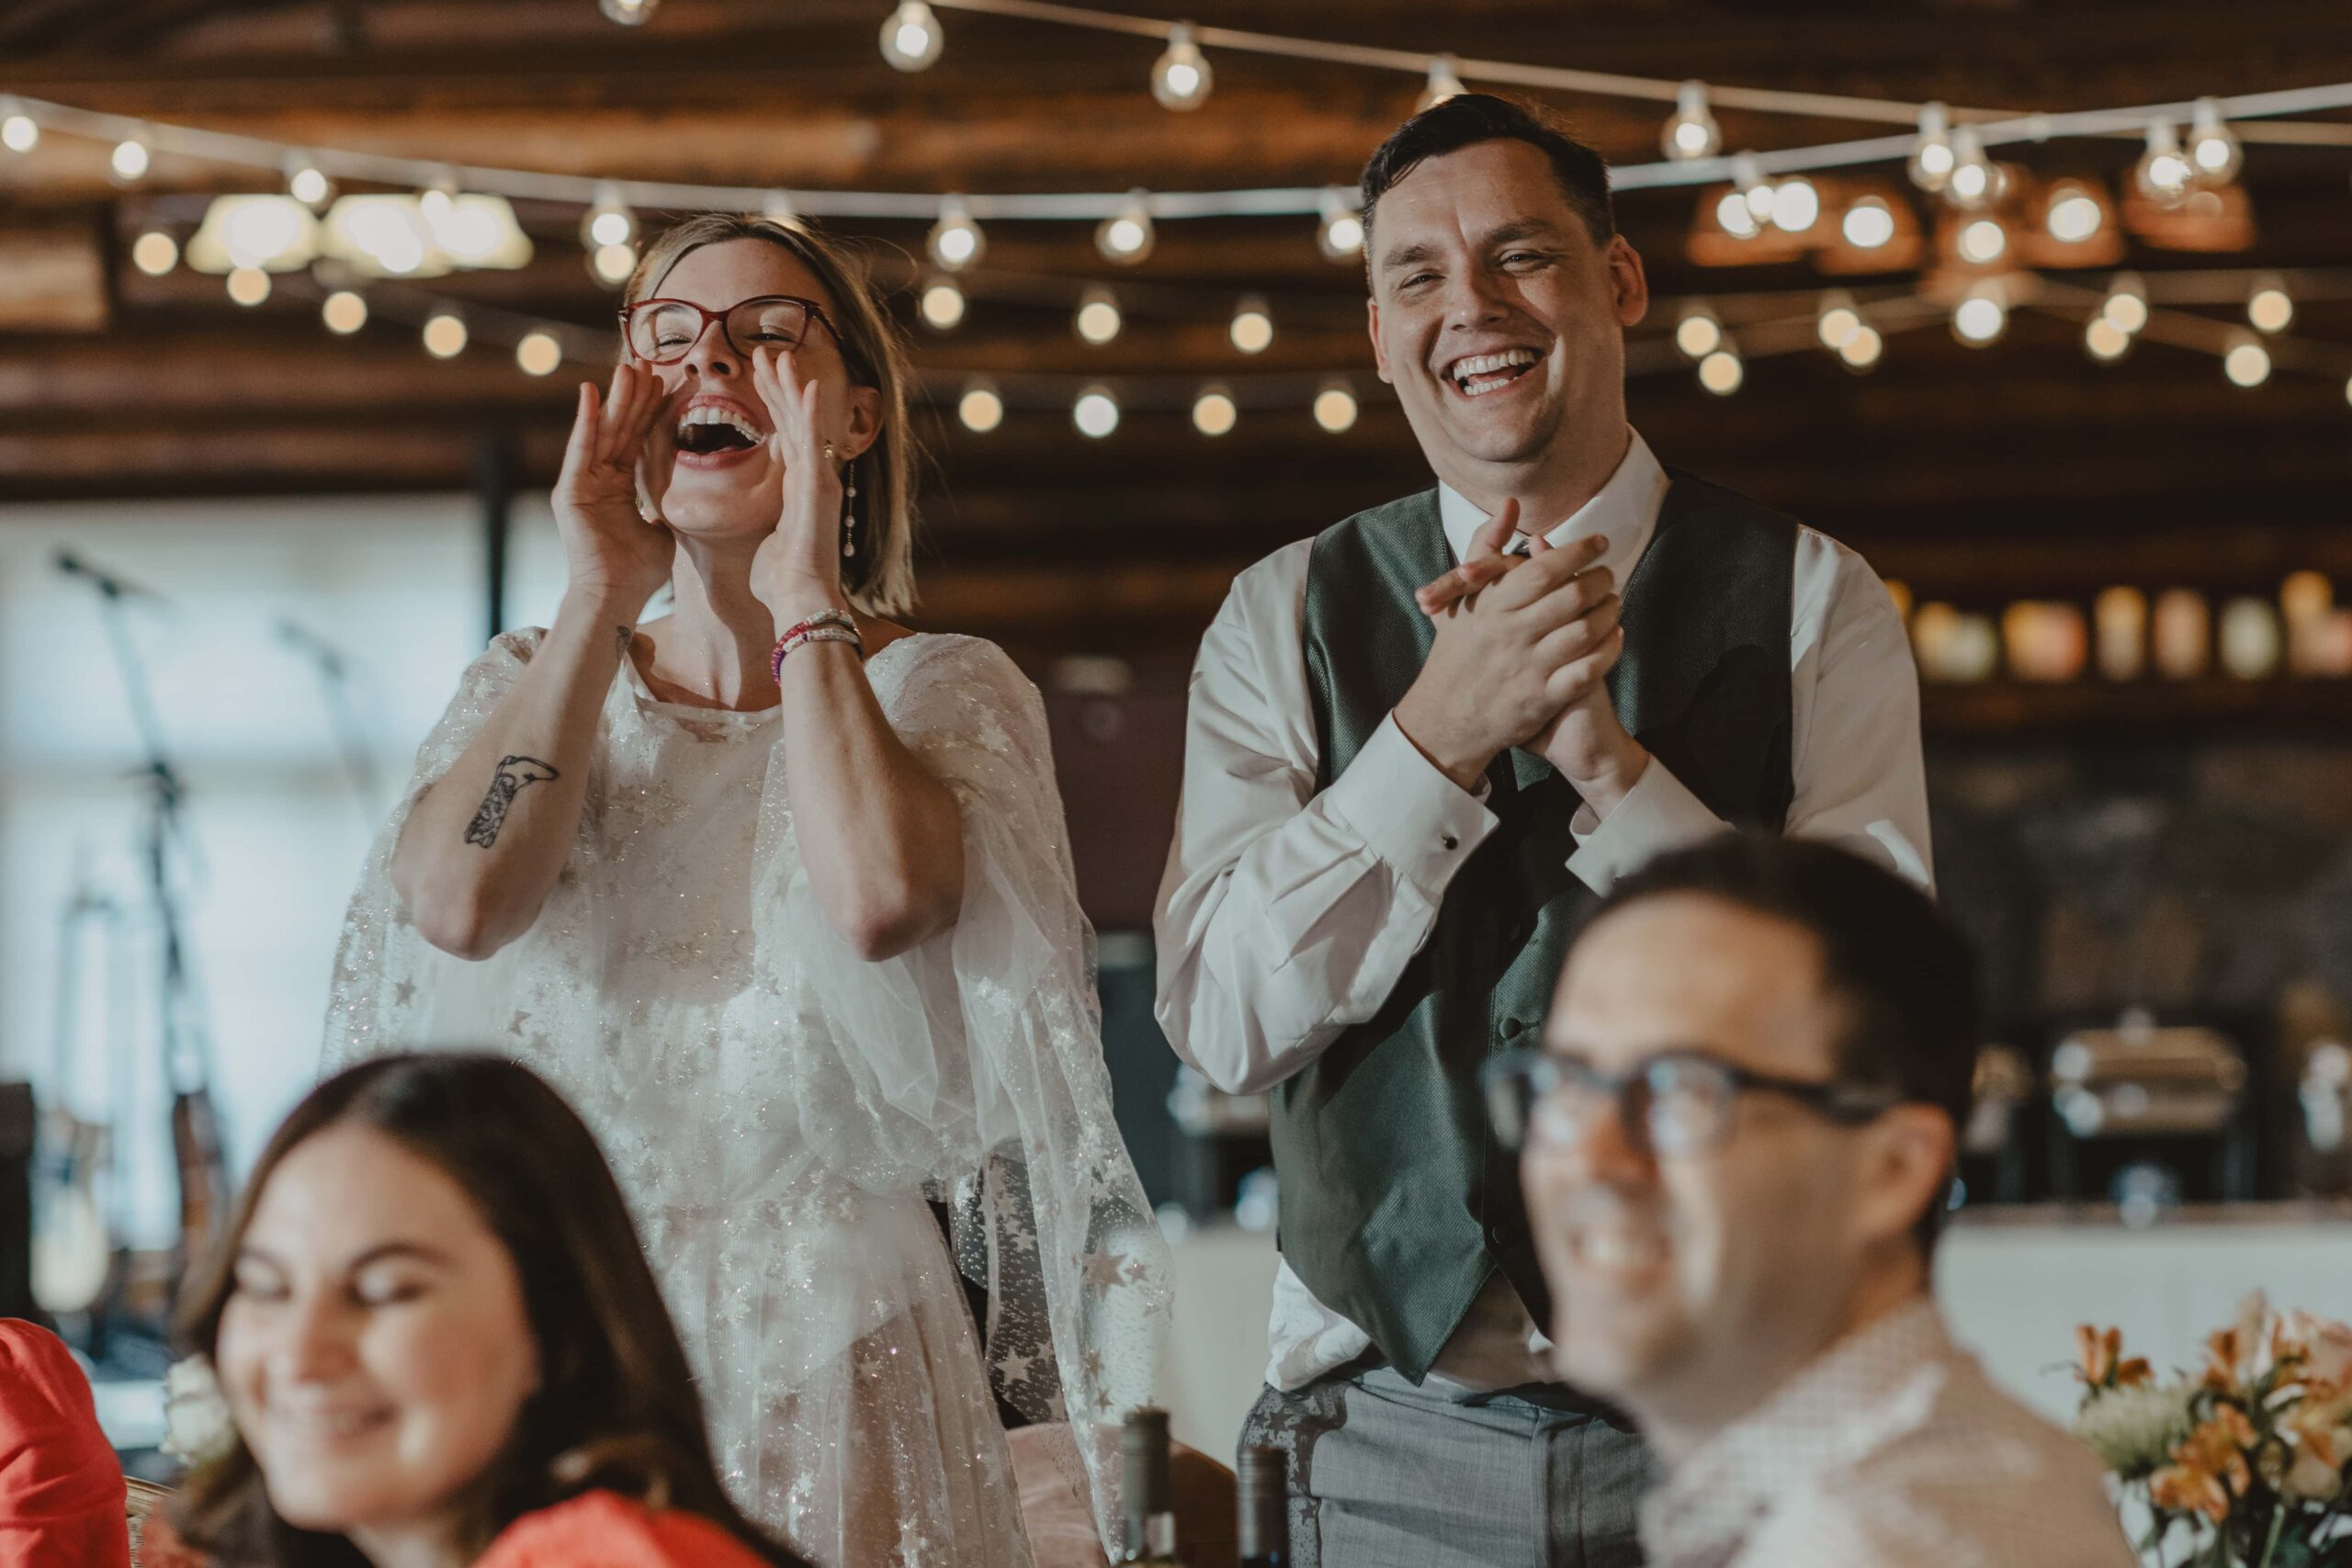 Edmonton Pioneer cabin's wedding reception photos